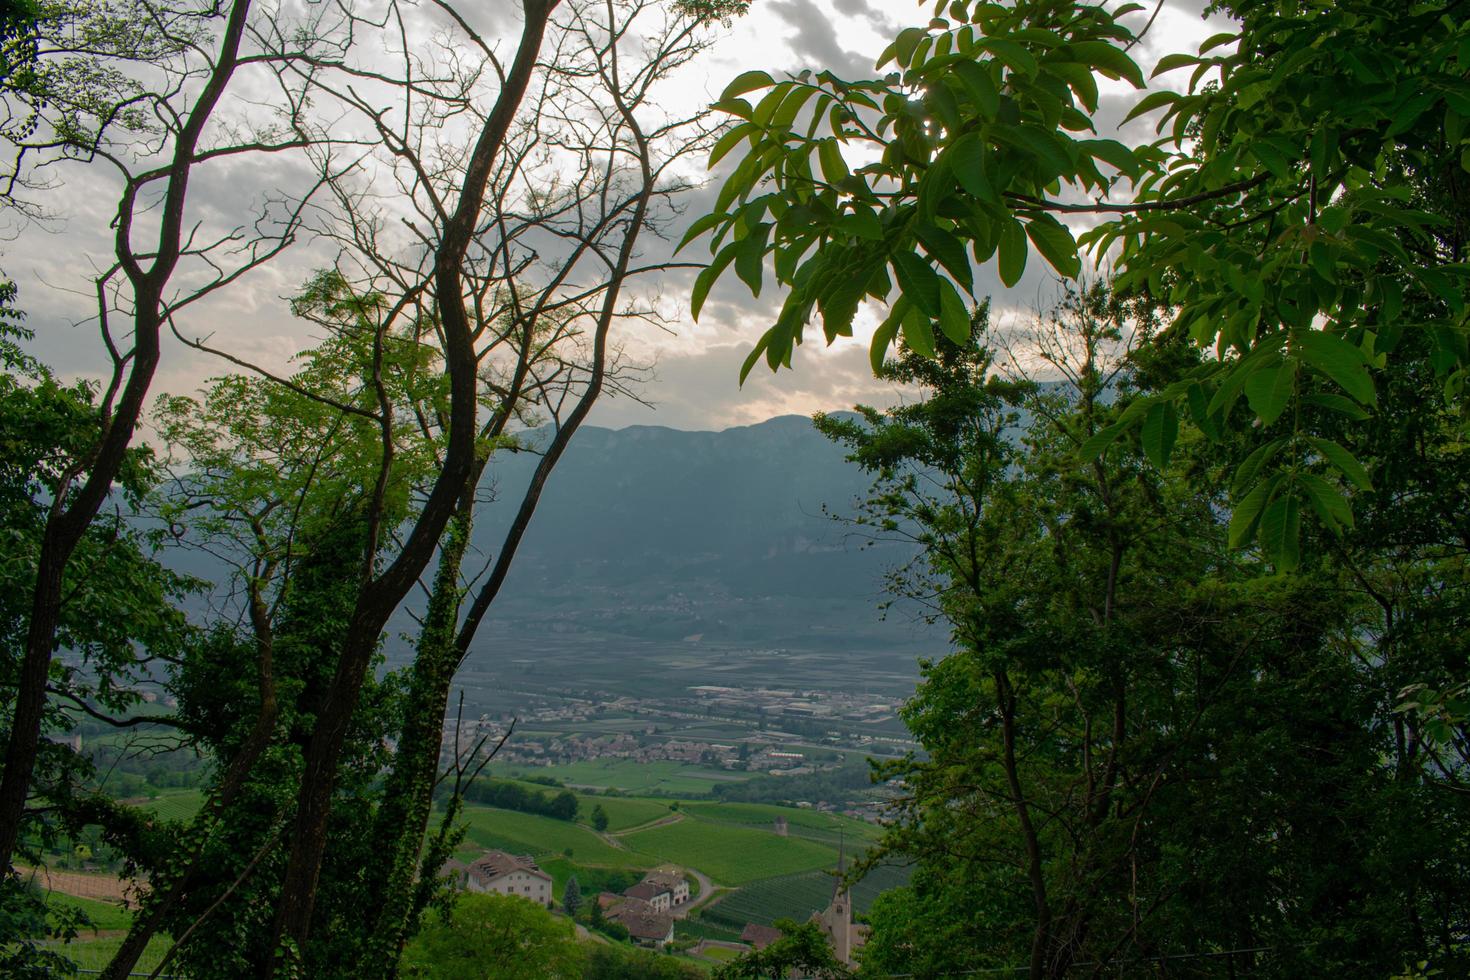 landschap van landelijk dorp met bergen op de achtergrond, ingesloten in een frame van bomen foto